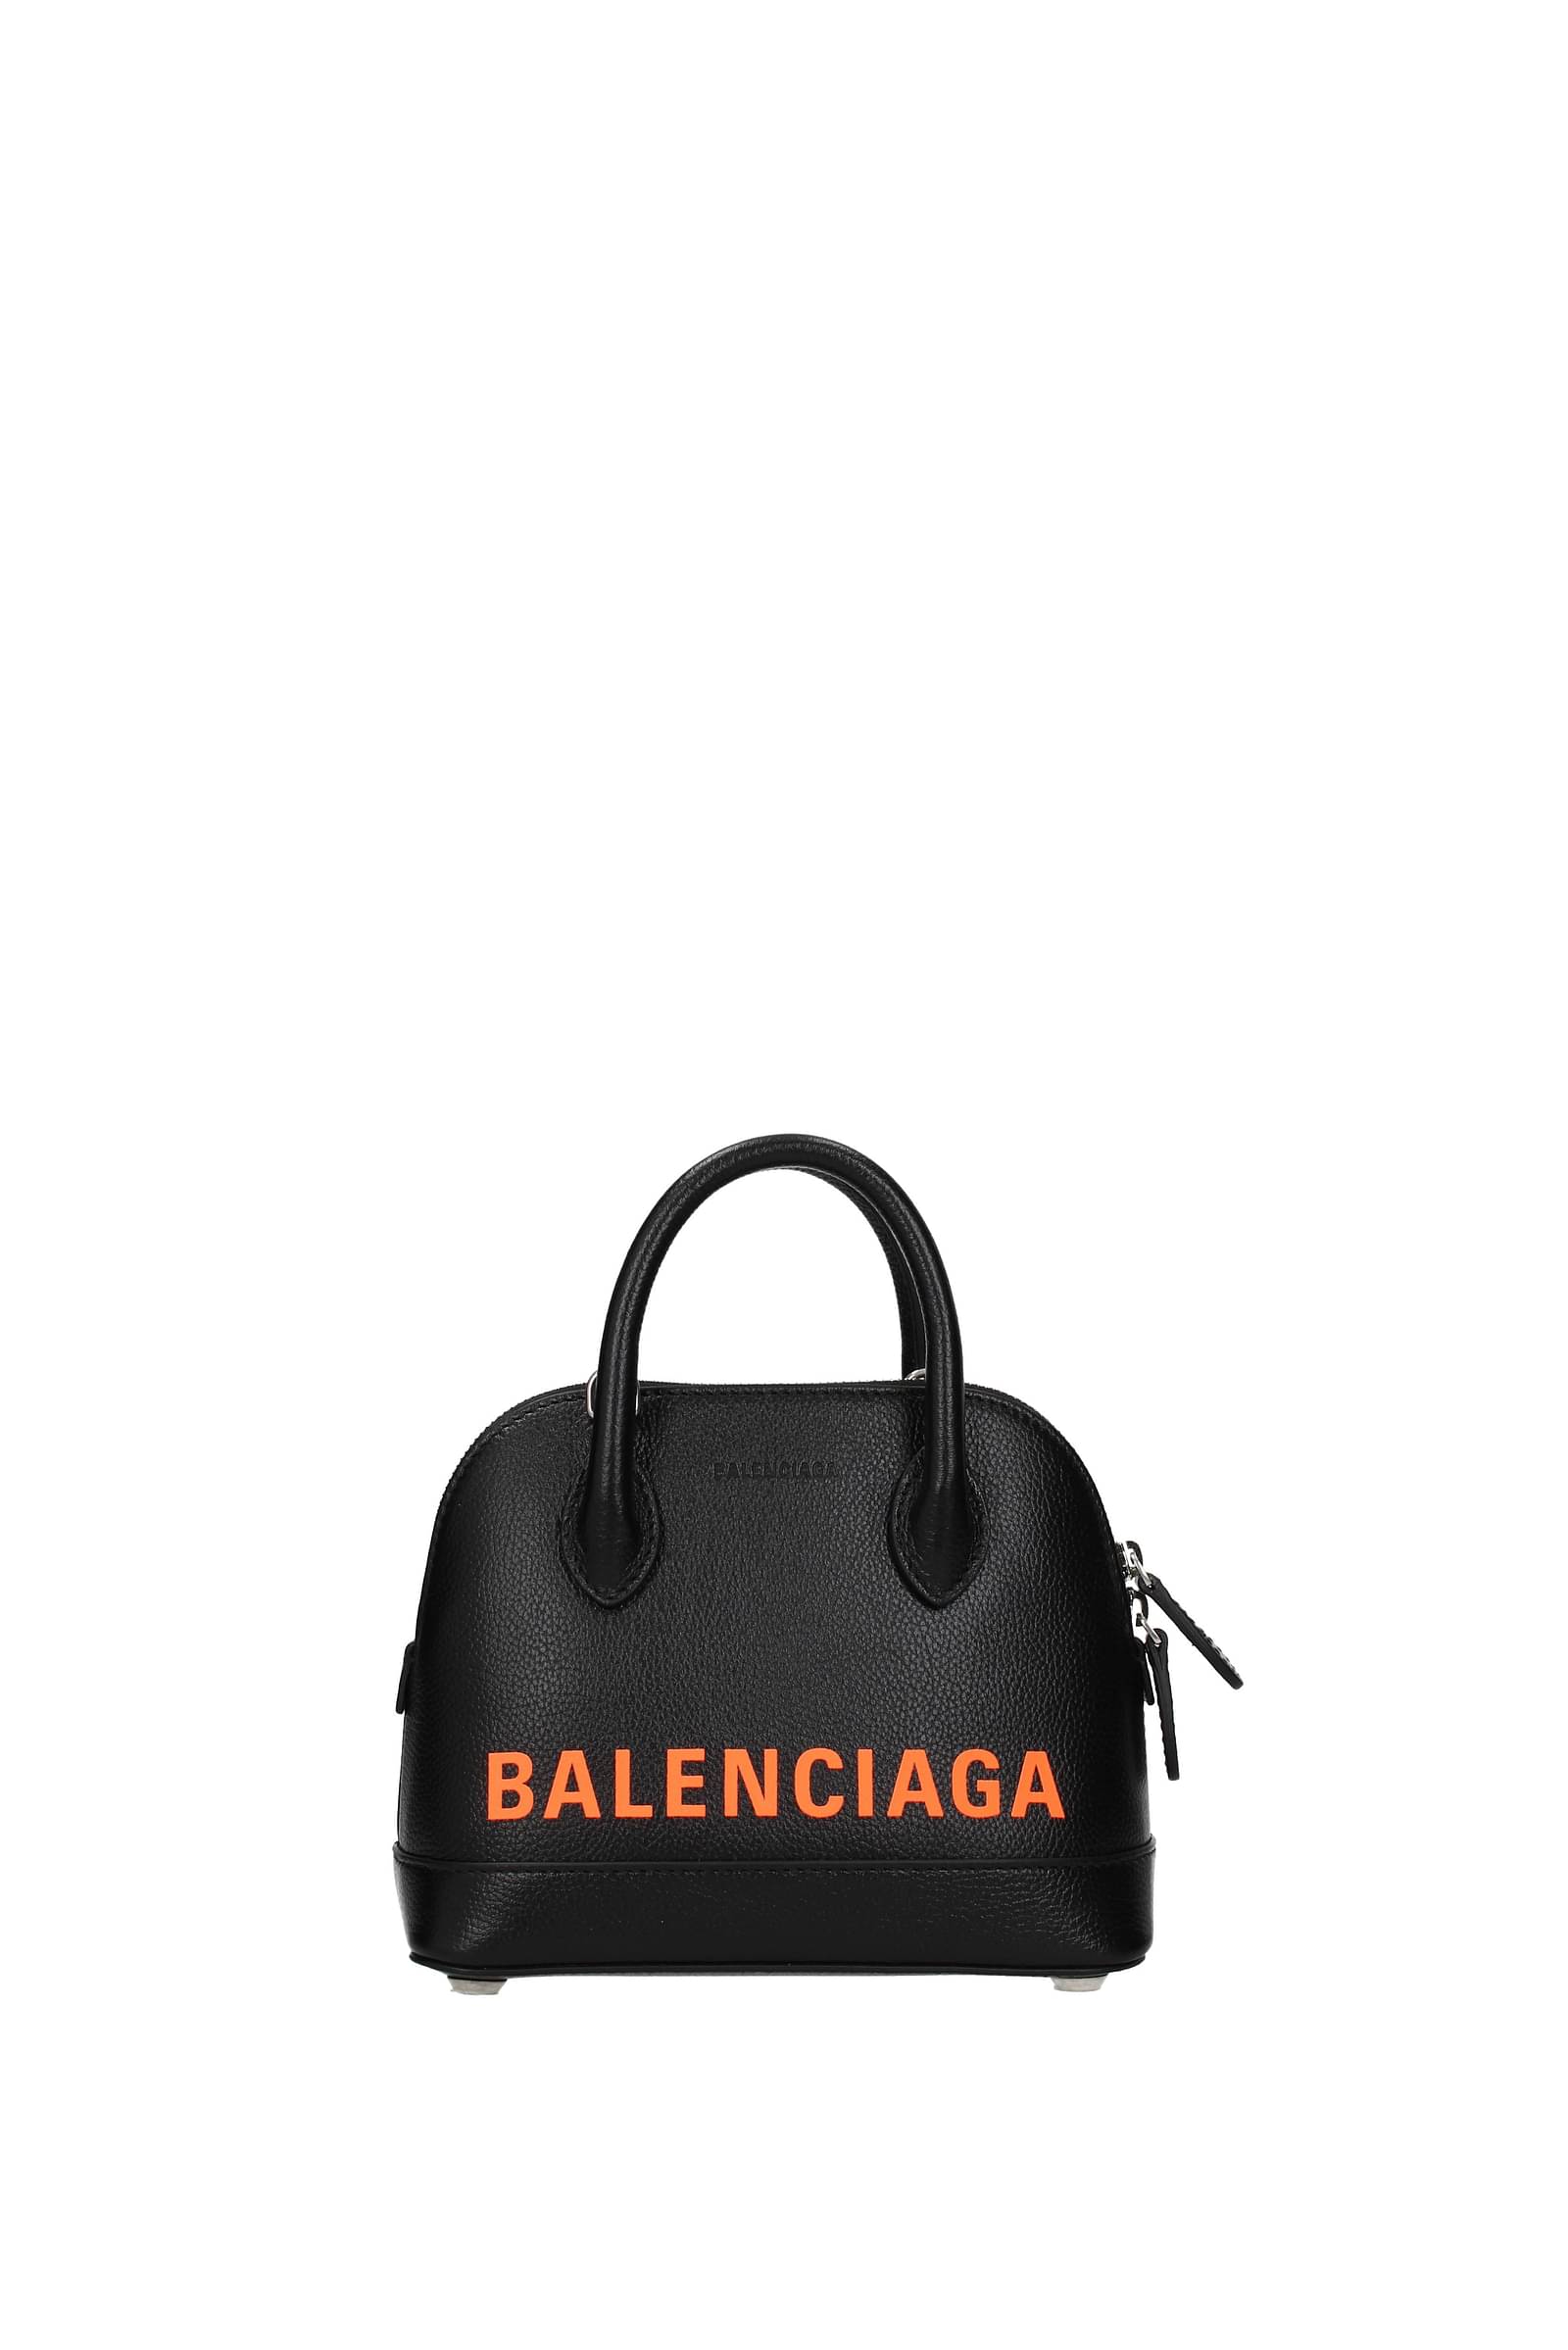 balenciaga bag sale online